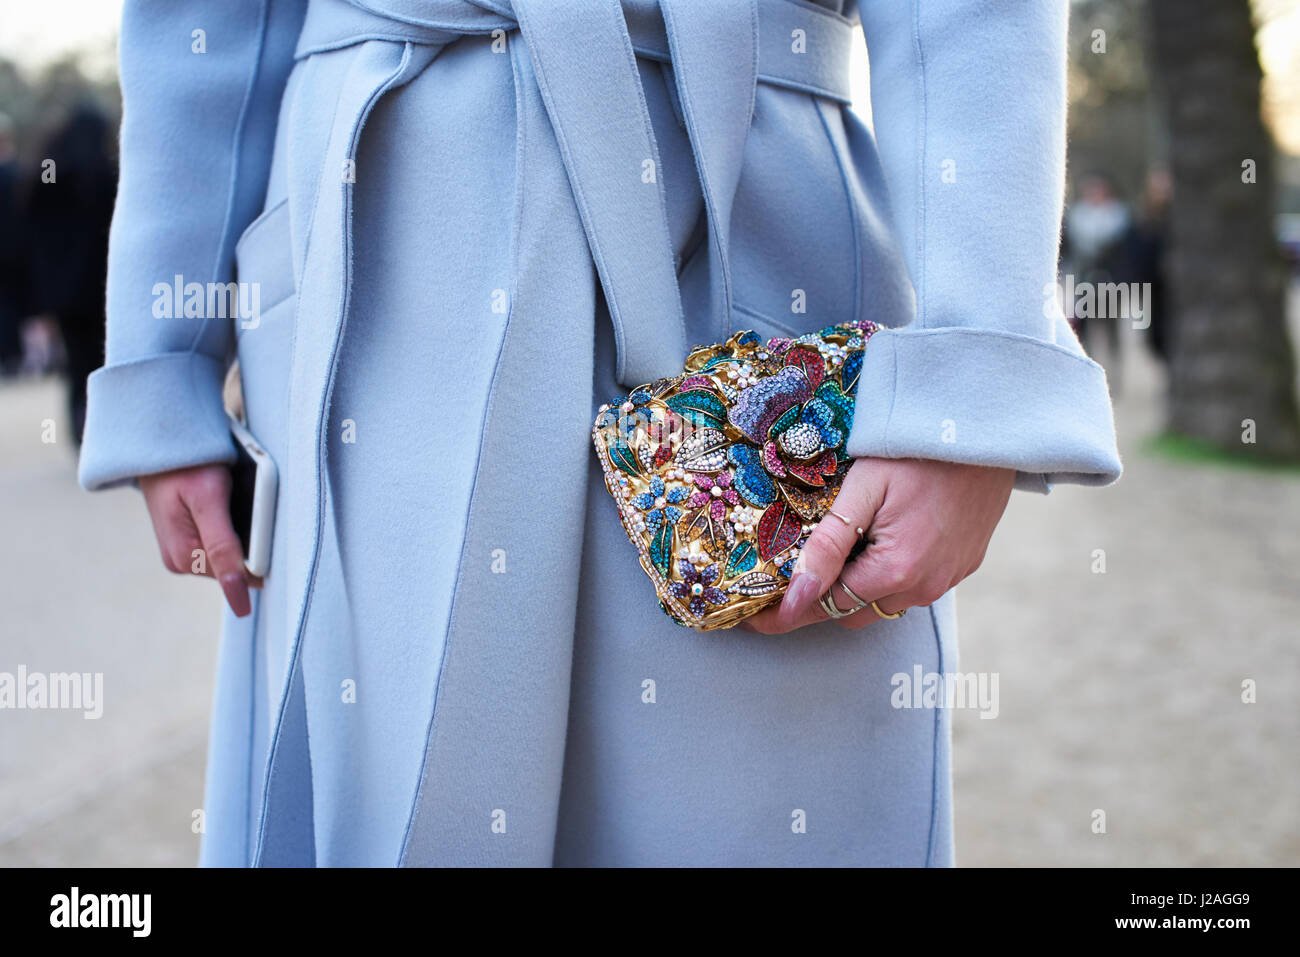 Londres - Février 2017 : femme vêtue de bleu pâle manteau laine holding smartphone et petit sac à main décoré de l'appliqué dans la rue lors de la London Fashion Week, horizontal, vue avant Banque D'Images